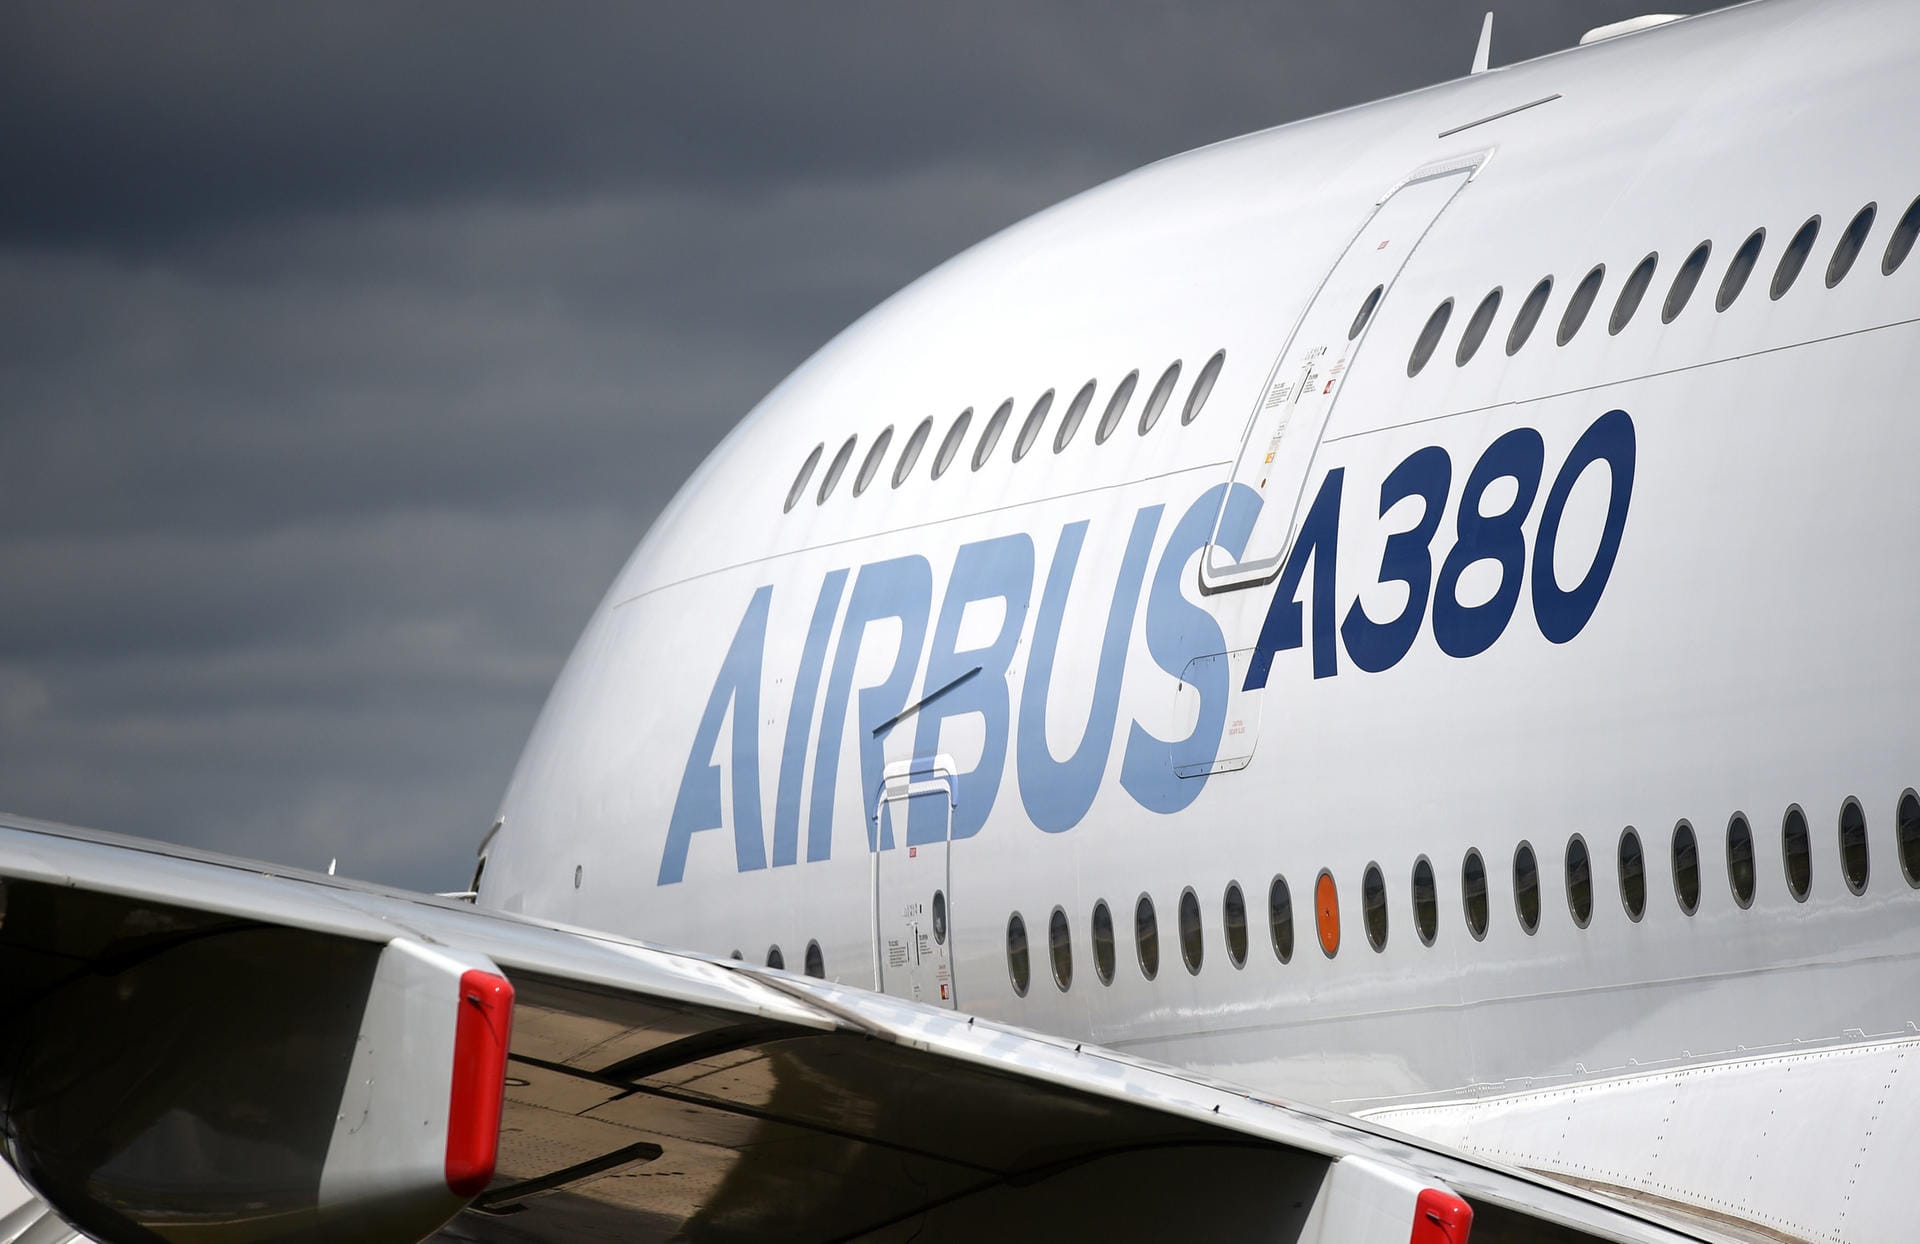 Insgesamt wurden bislang 331 Exemplare des A380 bestellt. 2021 will Airbus die letzte Maschine ausliefern.